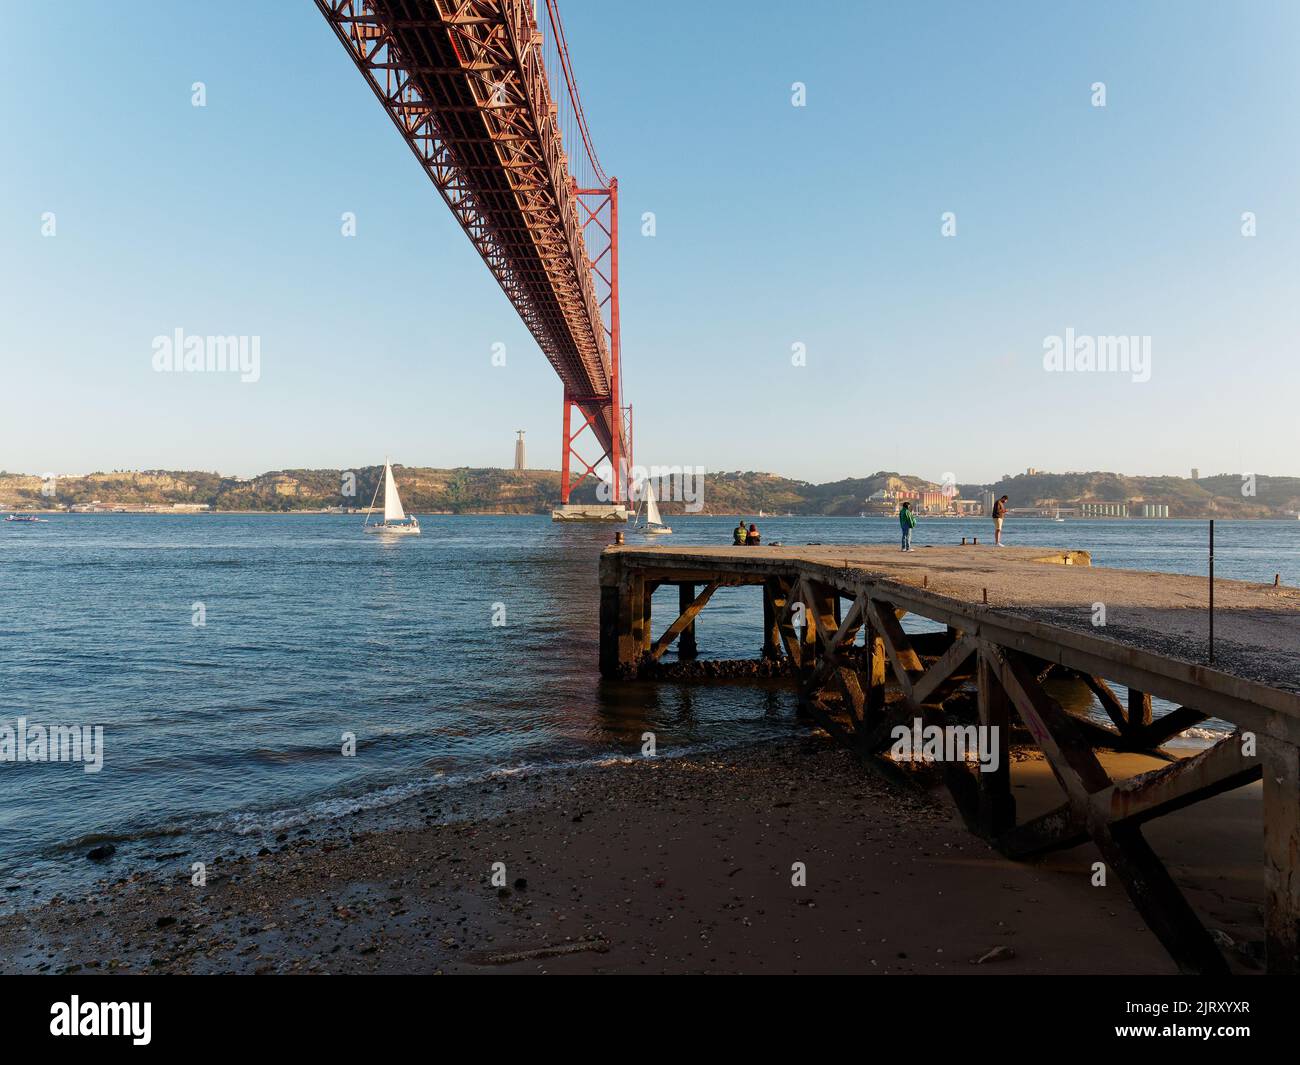 Le Ponte 25 de Abril (pont du 25th avril) enjambant le Tage à Lisbonne, Portugal. Jetée et plage au premier plan. Banque D'Images